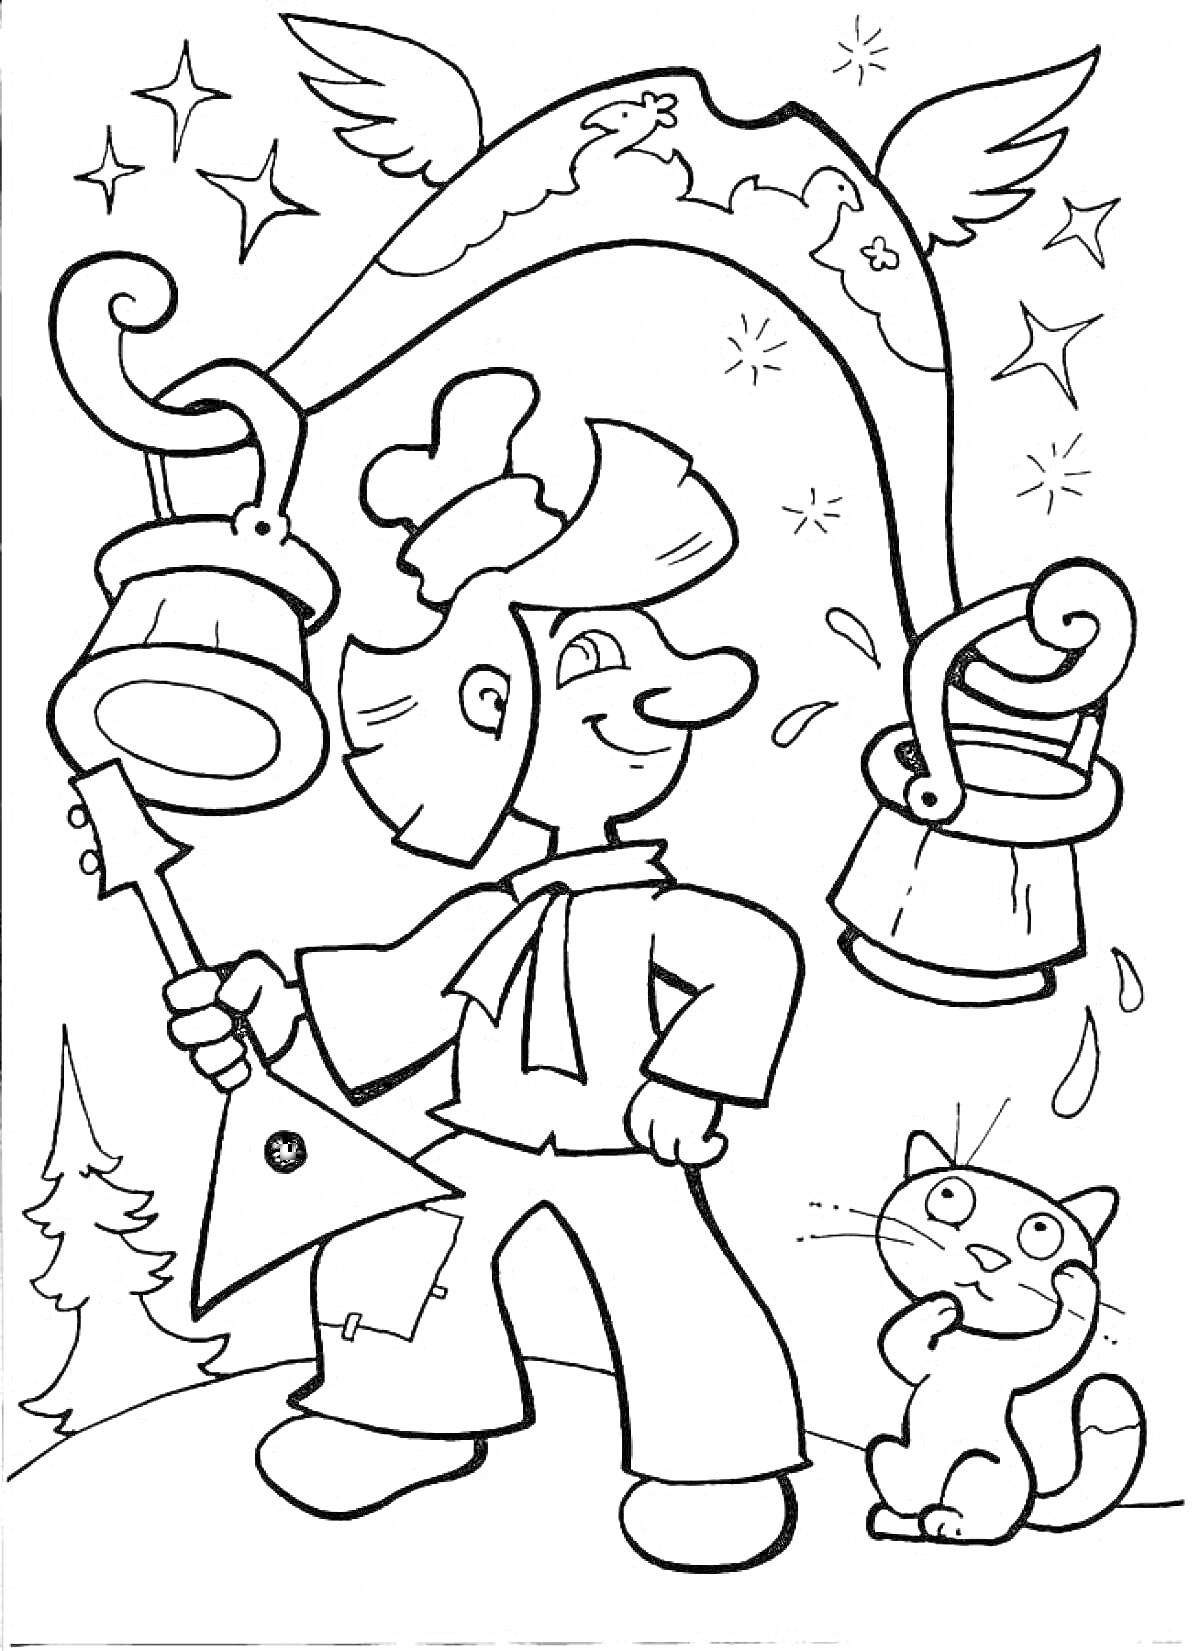 Мужчина в шапке с балалайкой и ведрами воды на коромысле, с котом, деревьями и звездами на фоне